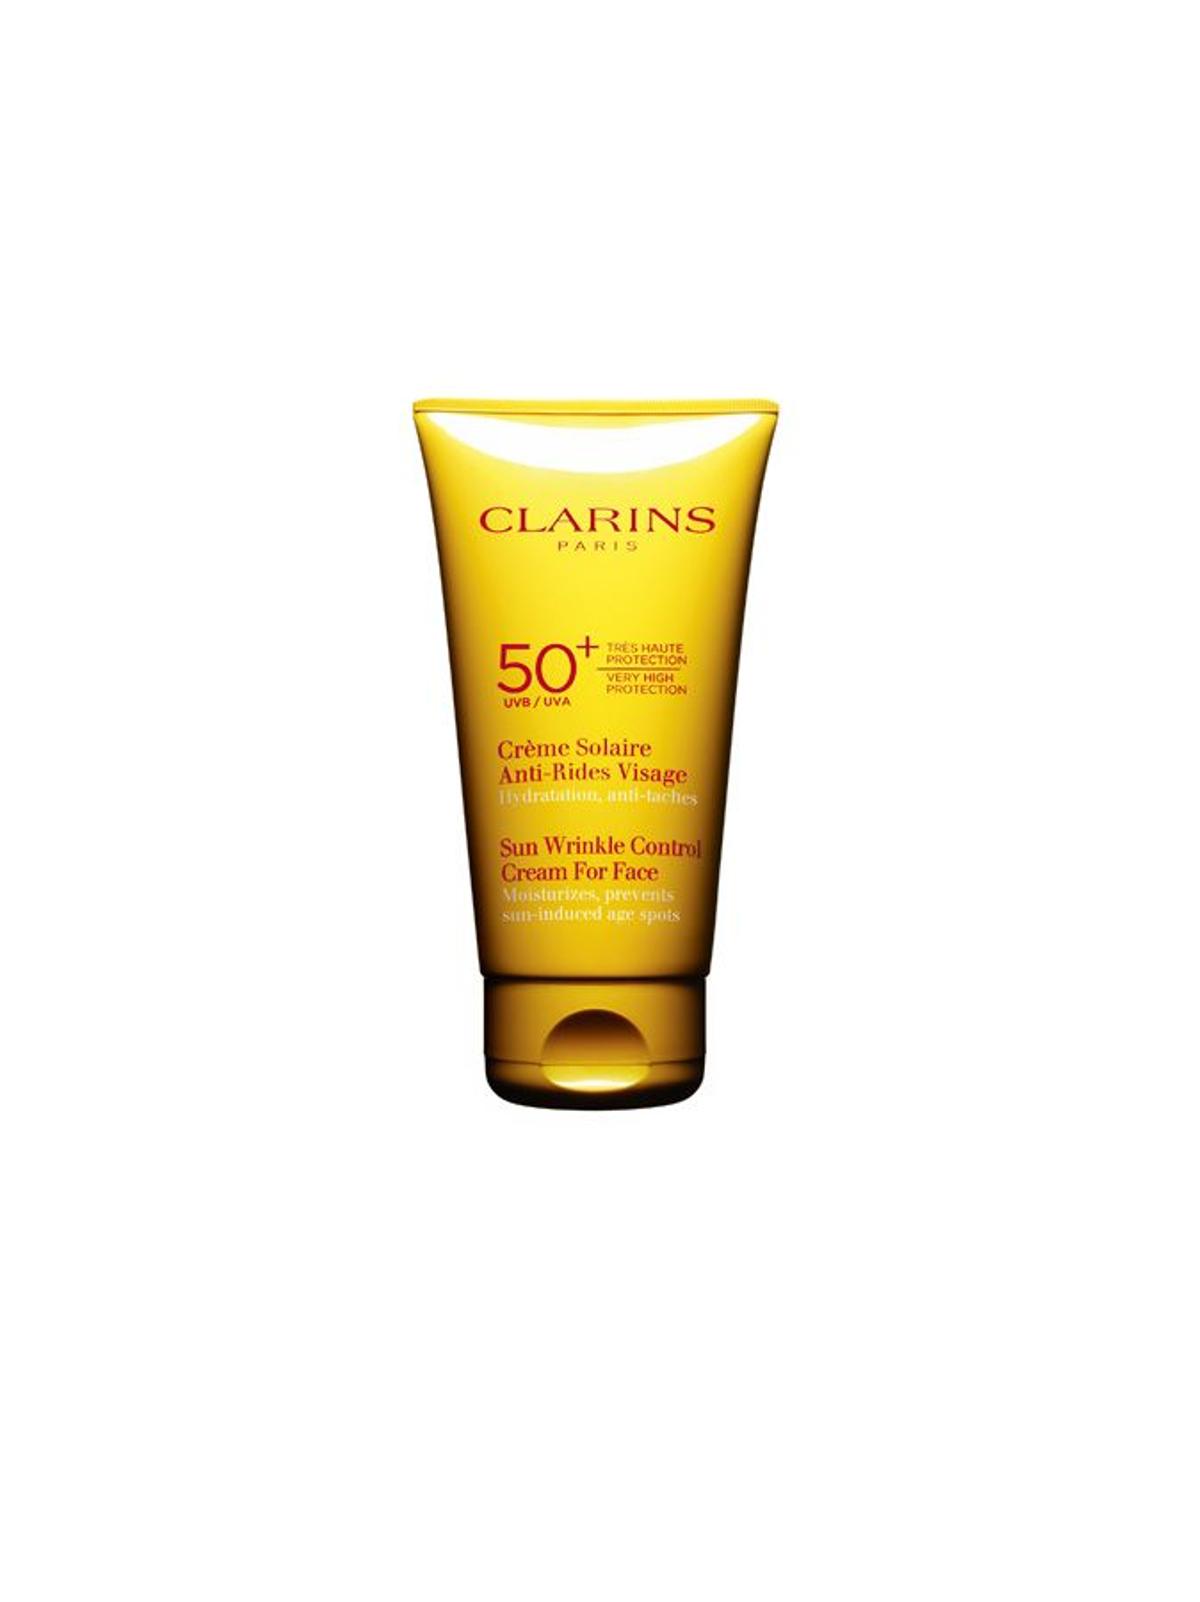 1. Crème Solaire Anti-Rides Visage UVA / UVB 50+, de Clarins